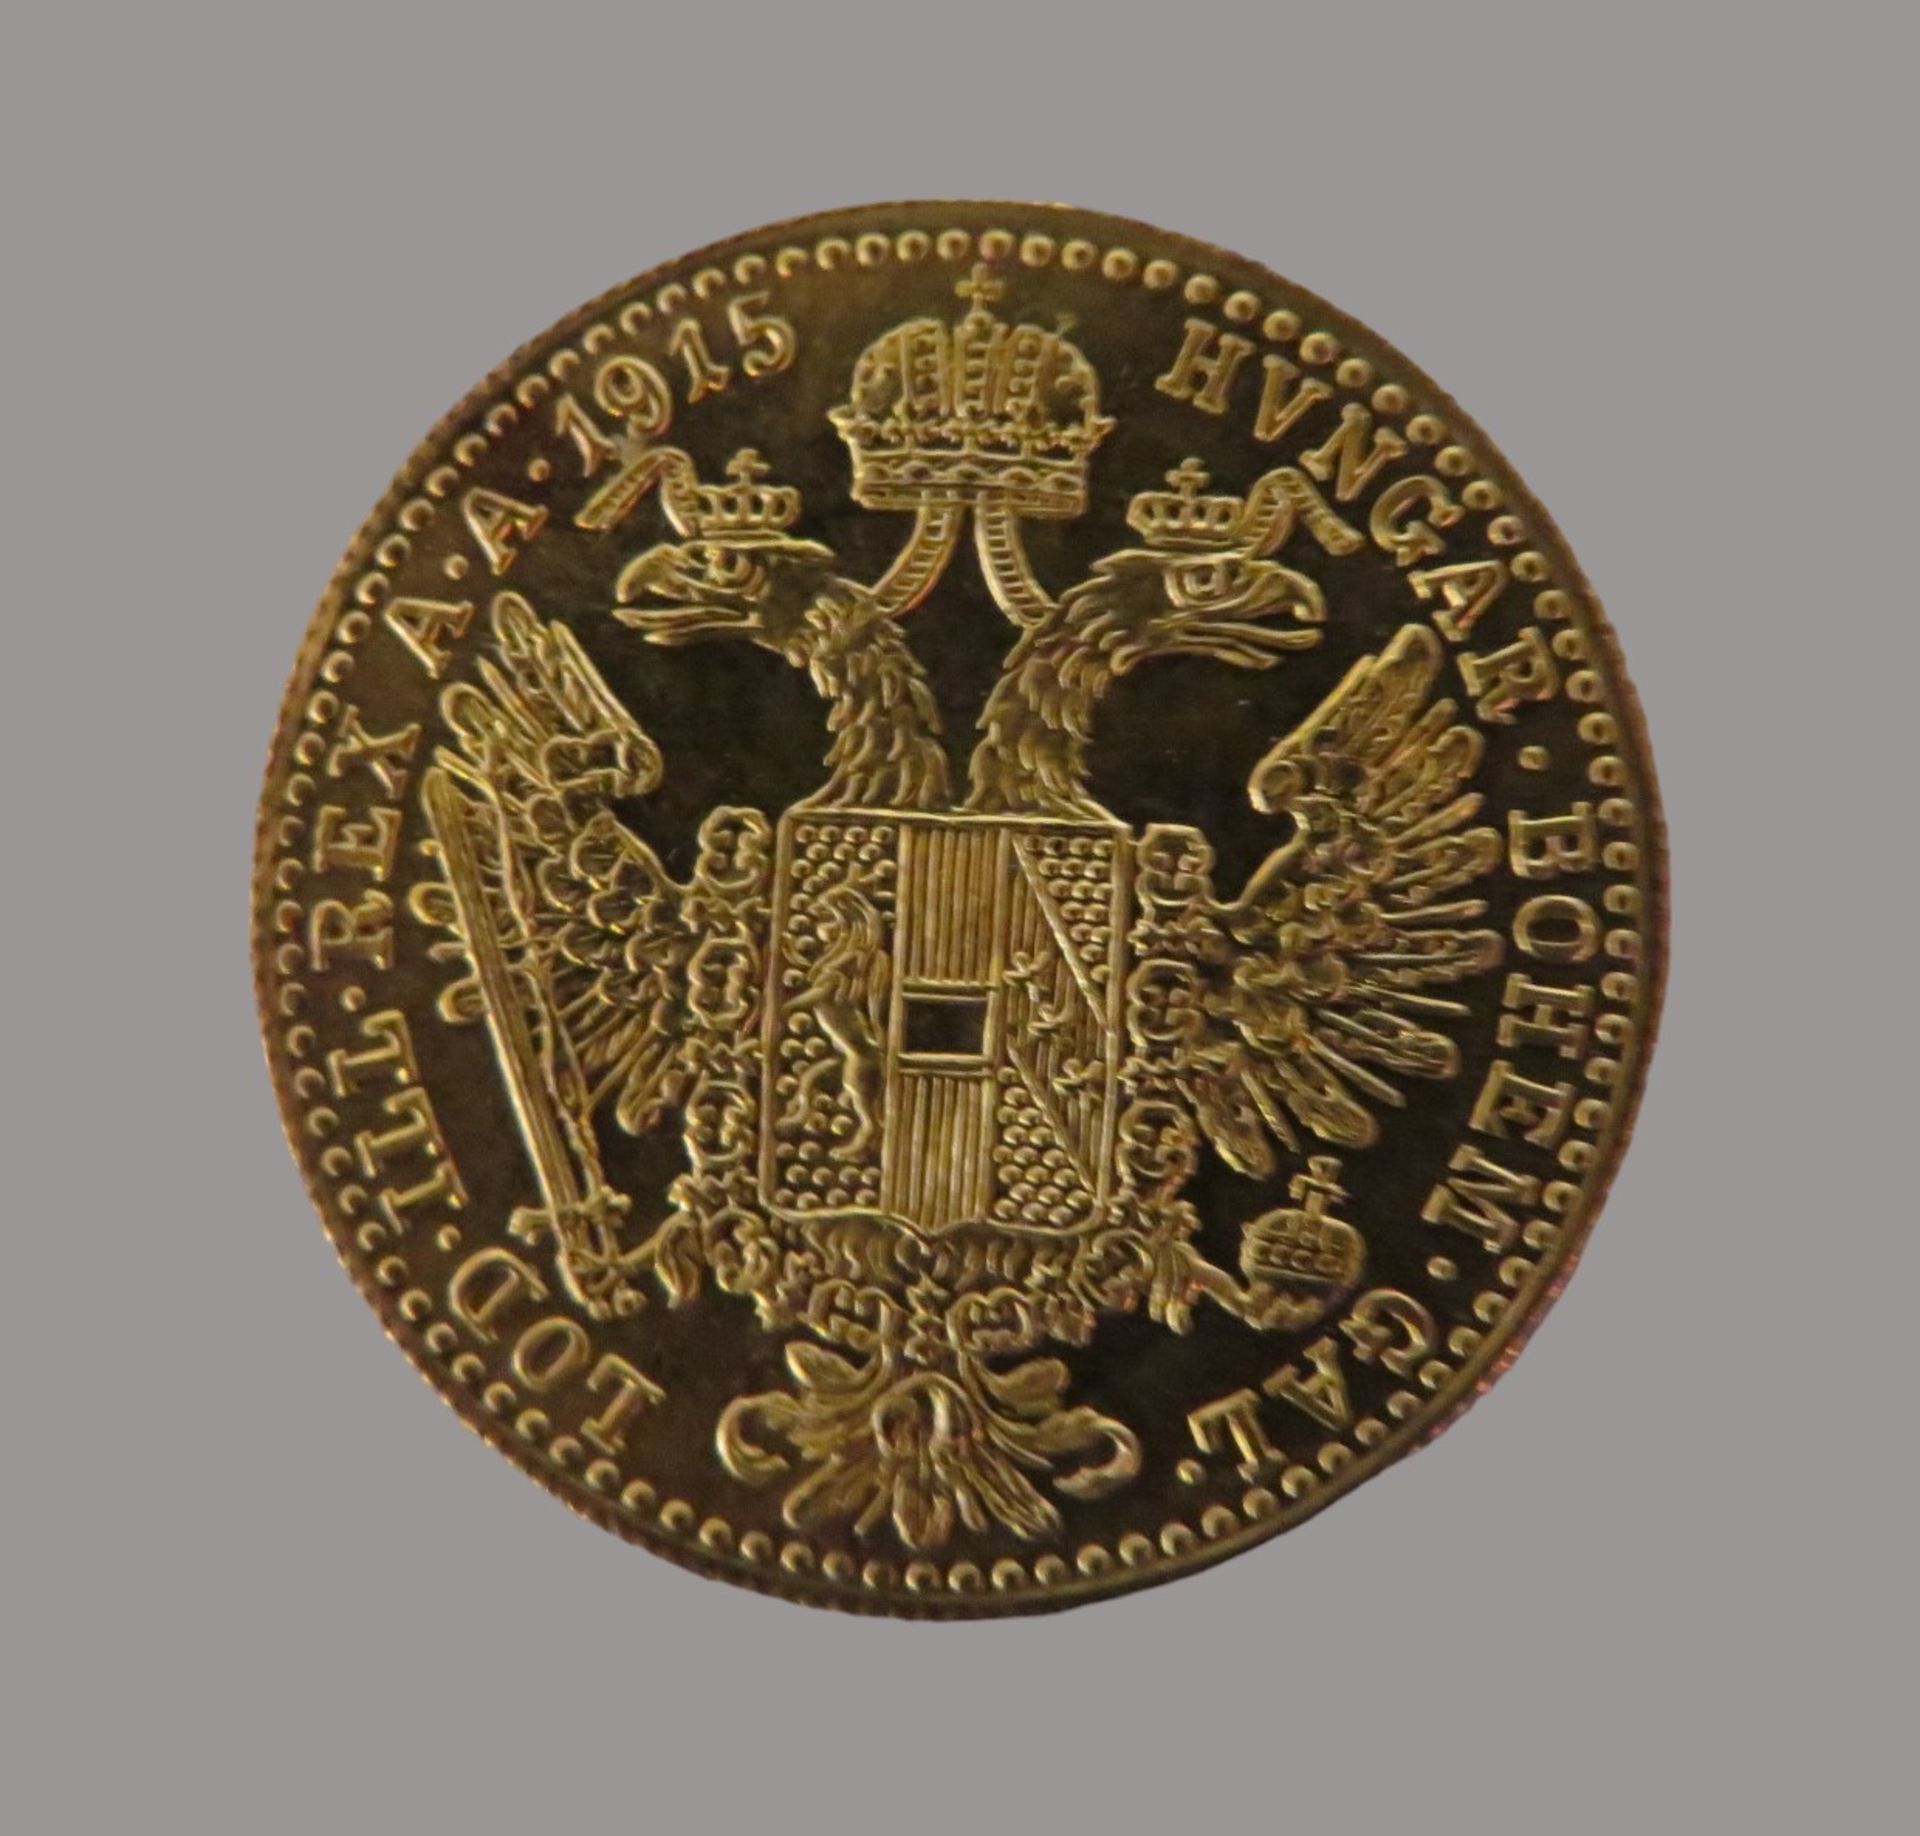 Goldmünze, Österreich, 1 Dukat, 1915, Gold 986/000, 3,48 g, d 2 cm. - Image 2 of 2